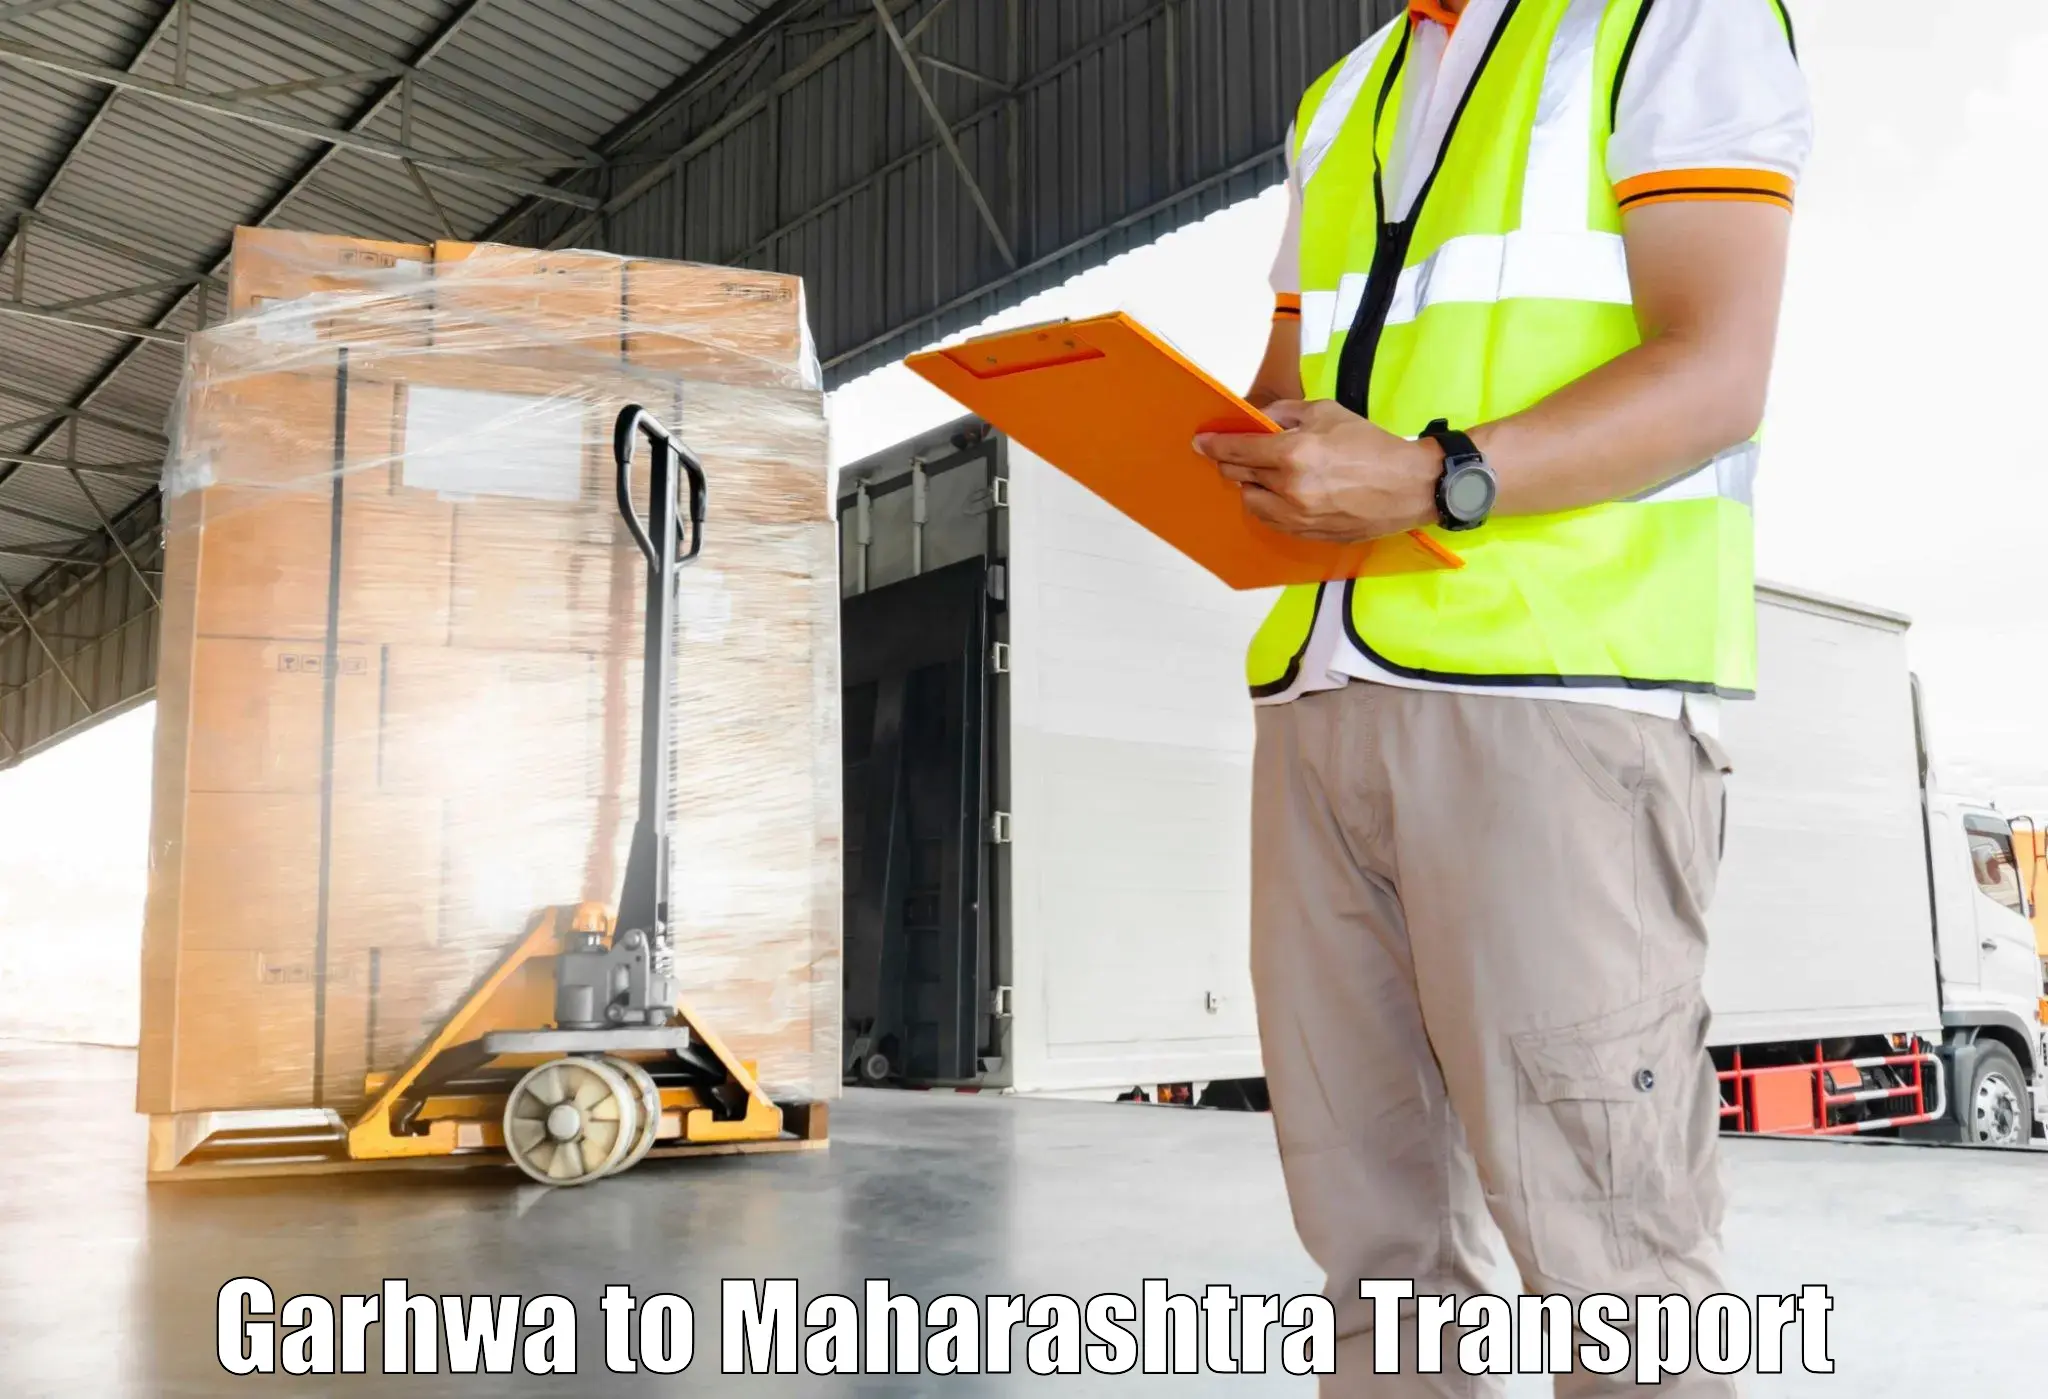 Transport services Garhwa to IIT Mumbai